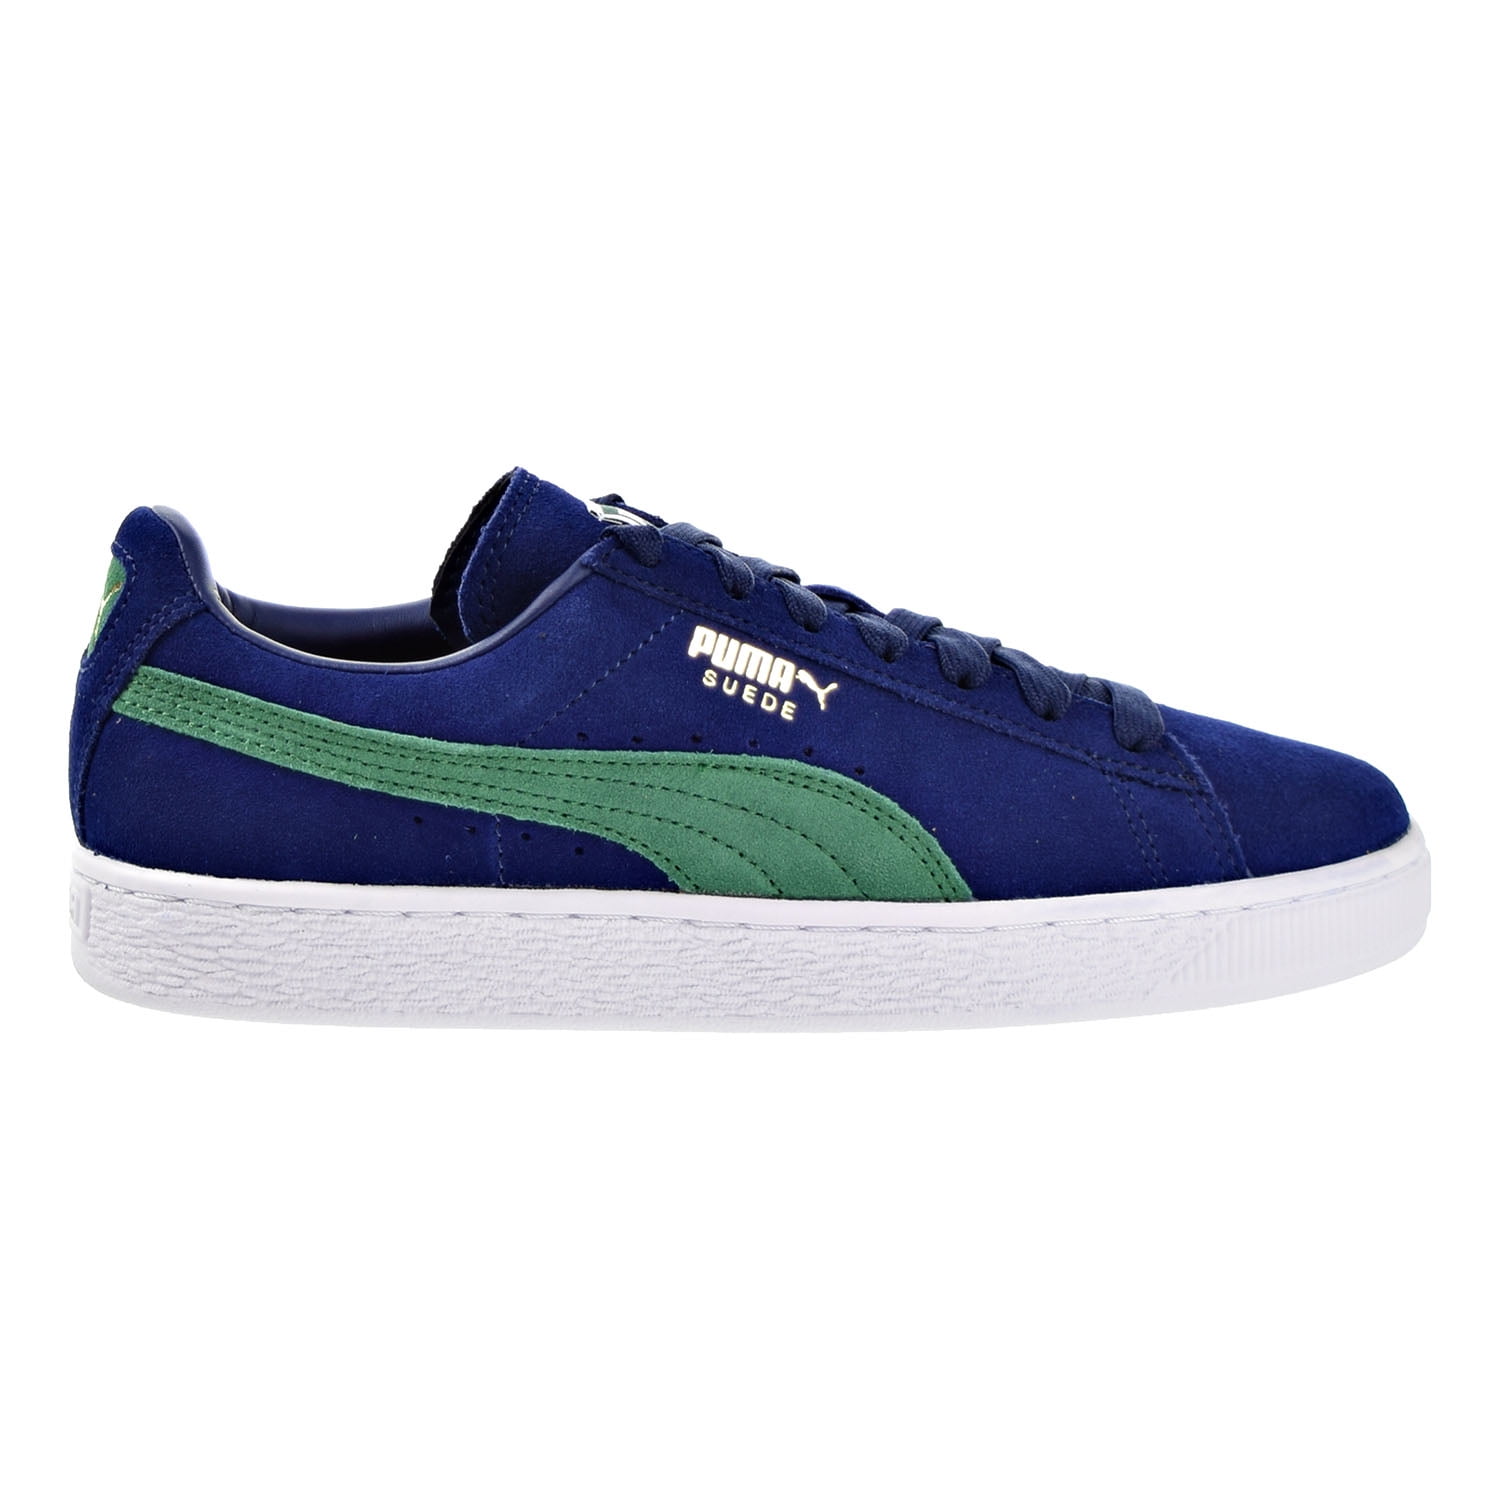 Puma Suede Classic + Men's Shoes Blue Depths/Verdant Green 363242-22 ...